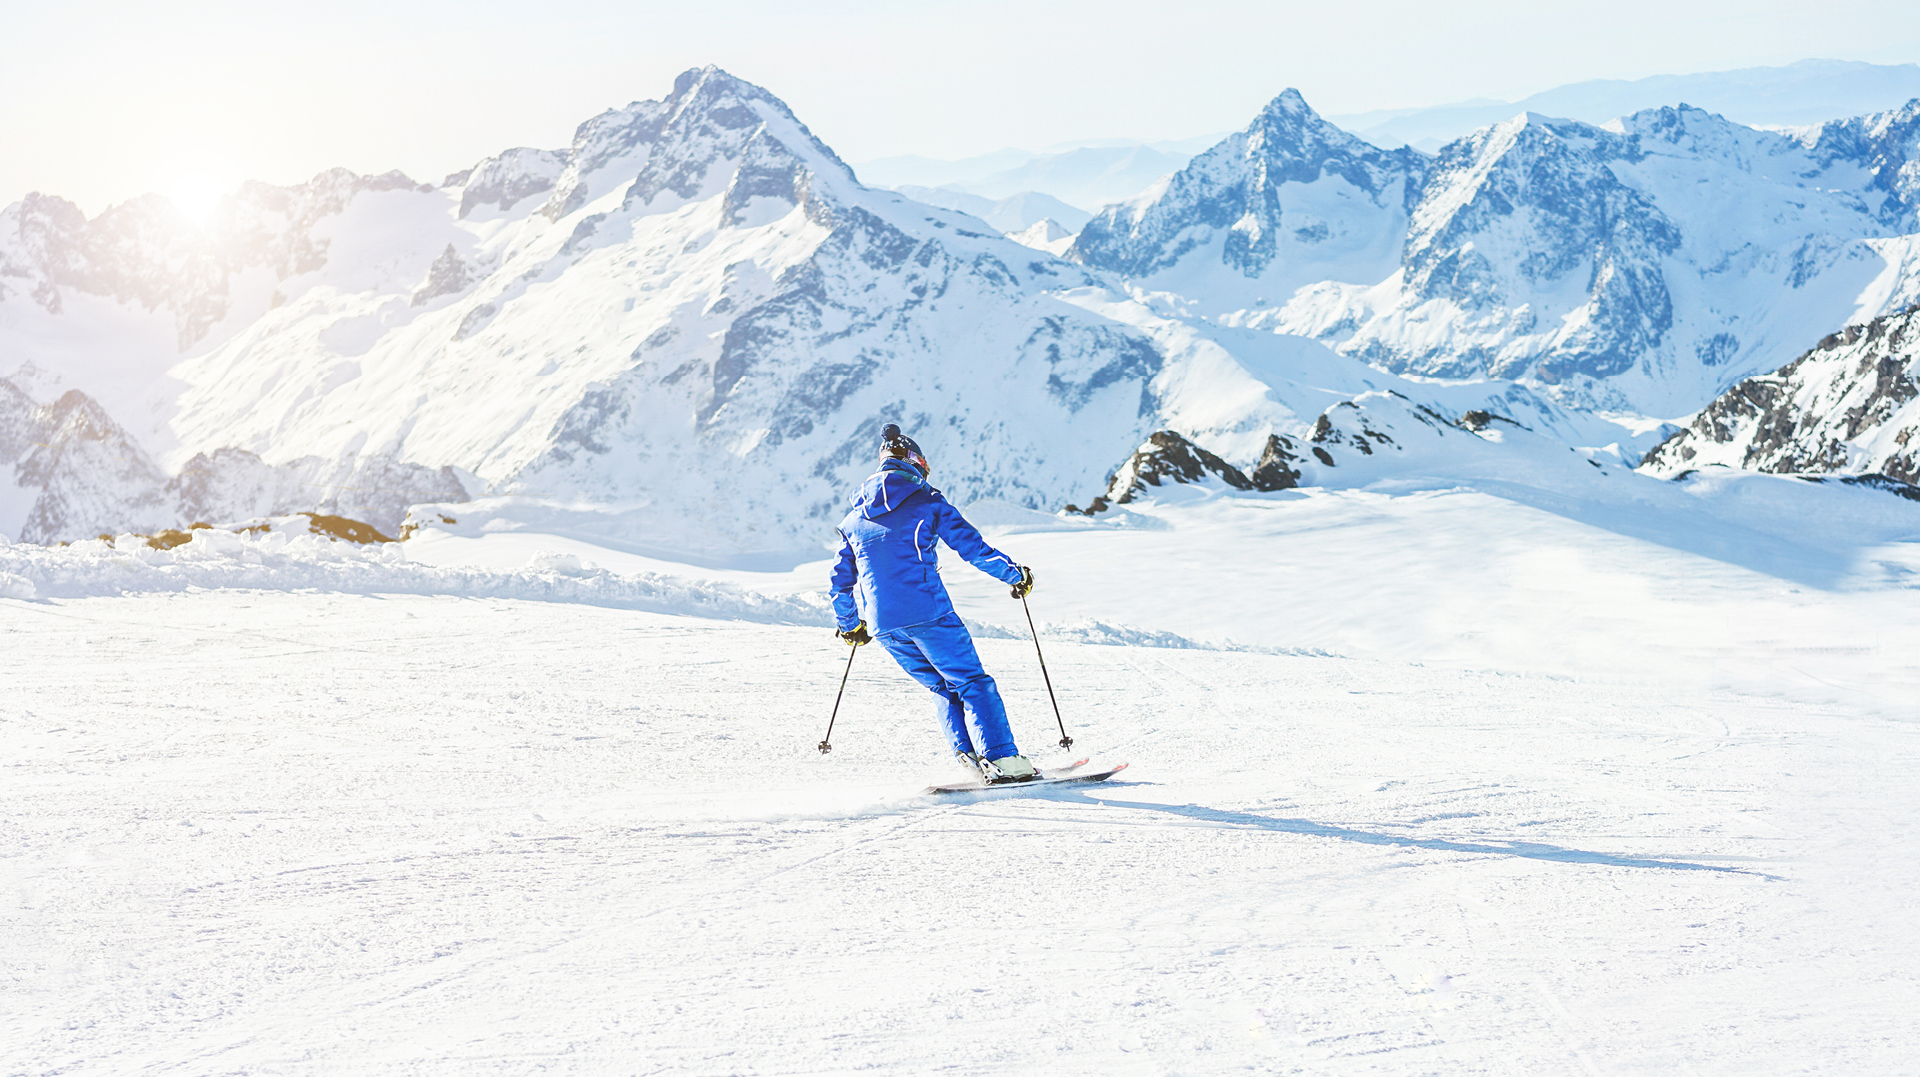 Melhores destinos para esquiar: saiba o que fazer em Aspen, Chamonix e Valle Nevado